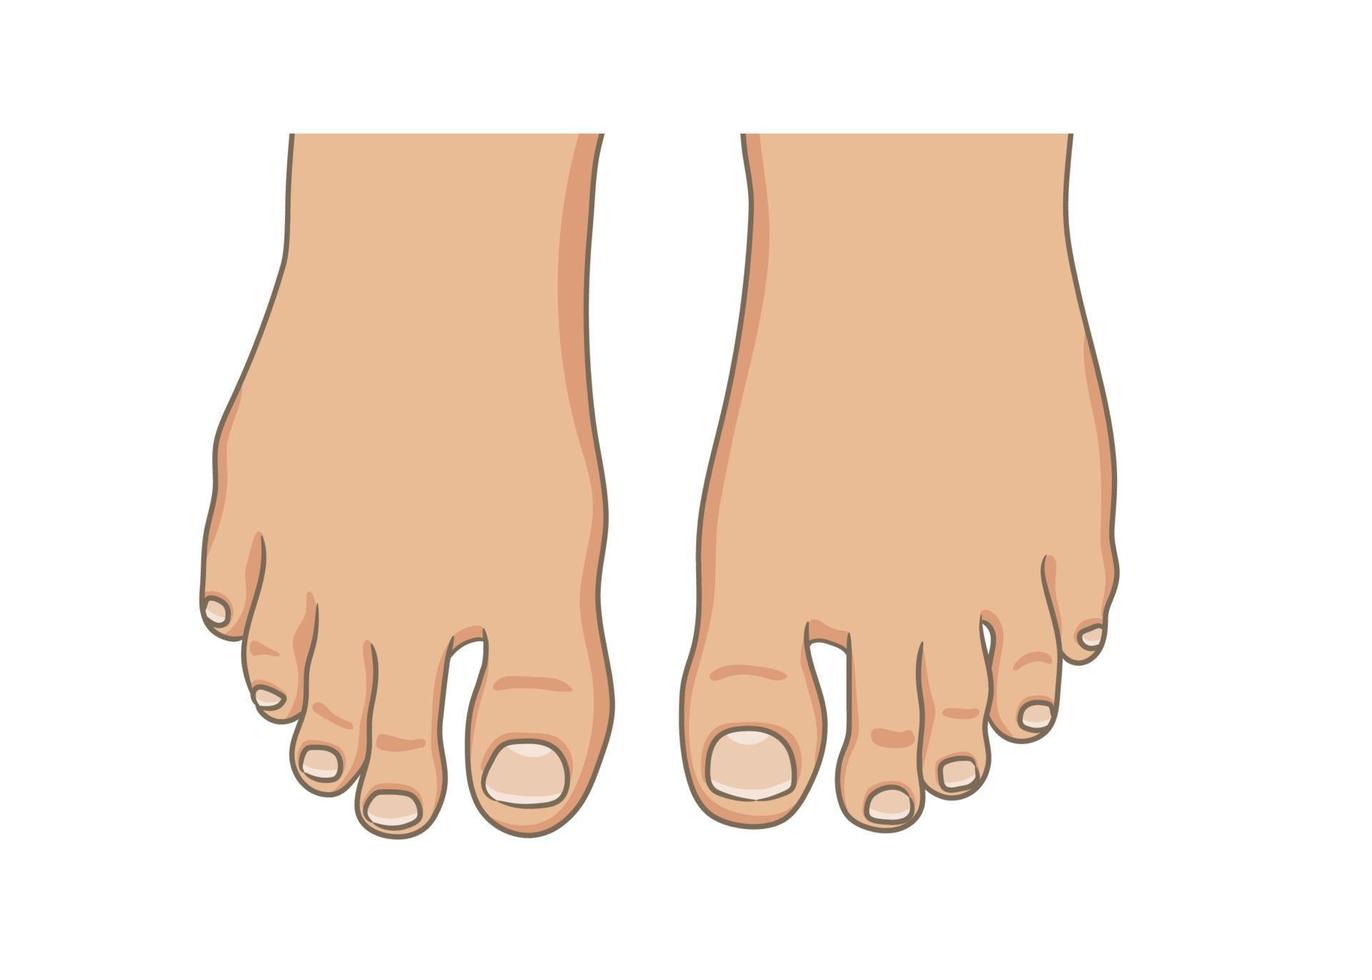 sola do pé feminino ou masculino, descalço, vista superior. unhas dos pés com ilustração pedicure.vector, estilo cartoon de mão desenhada isolado no branco. vetor